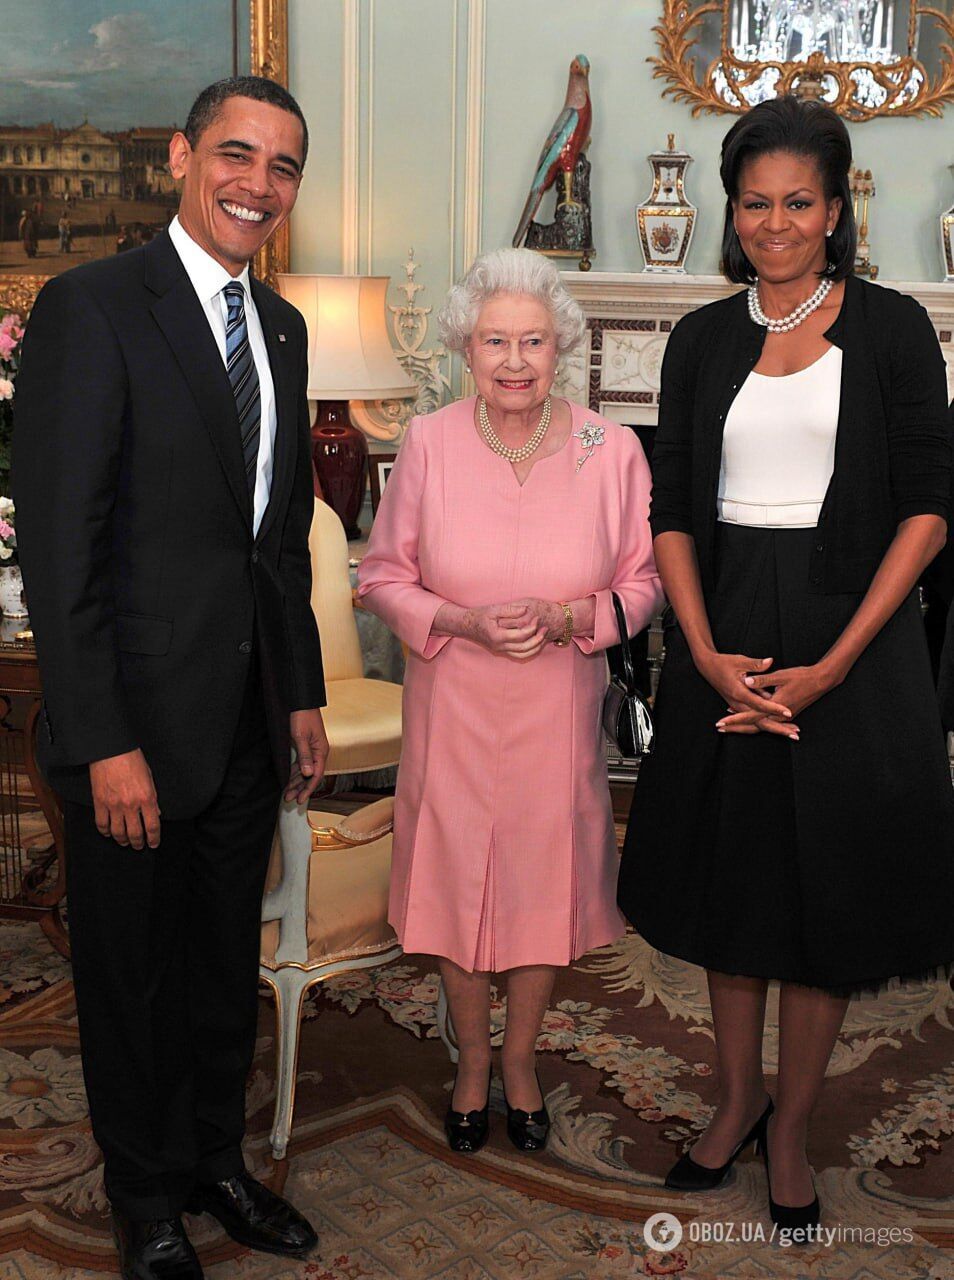 Єлизавета ІІ була в захваті: стало відомо, який "некоролівський" подарунок від Барака Обами дуже вразив монархиню 